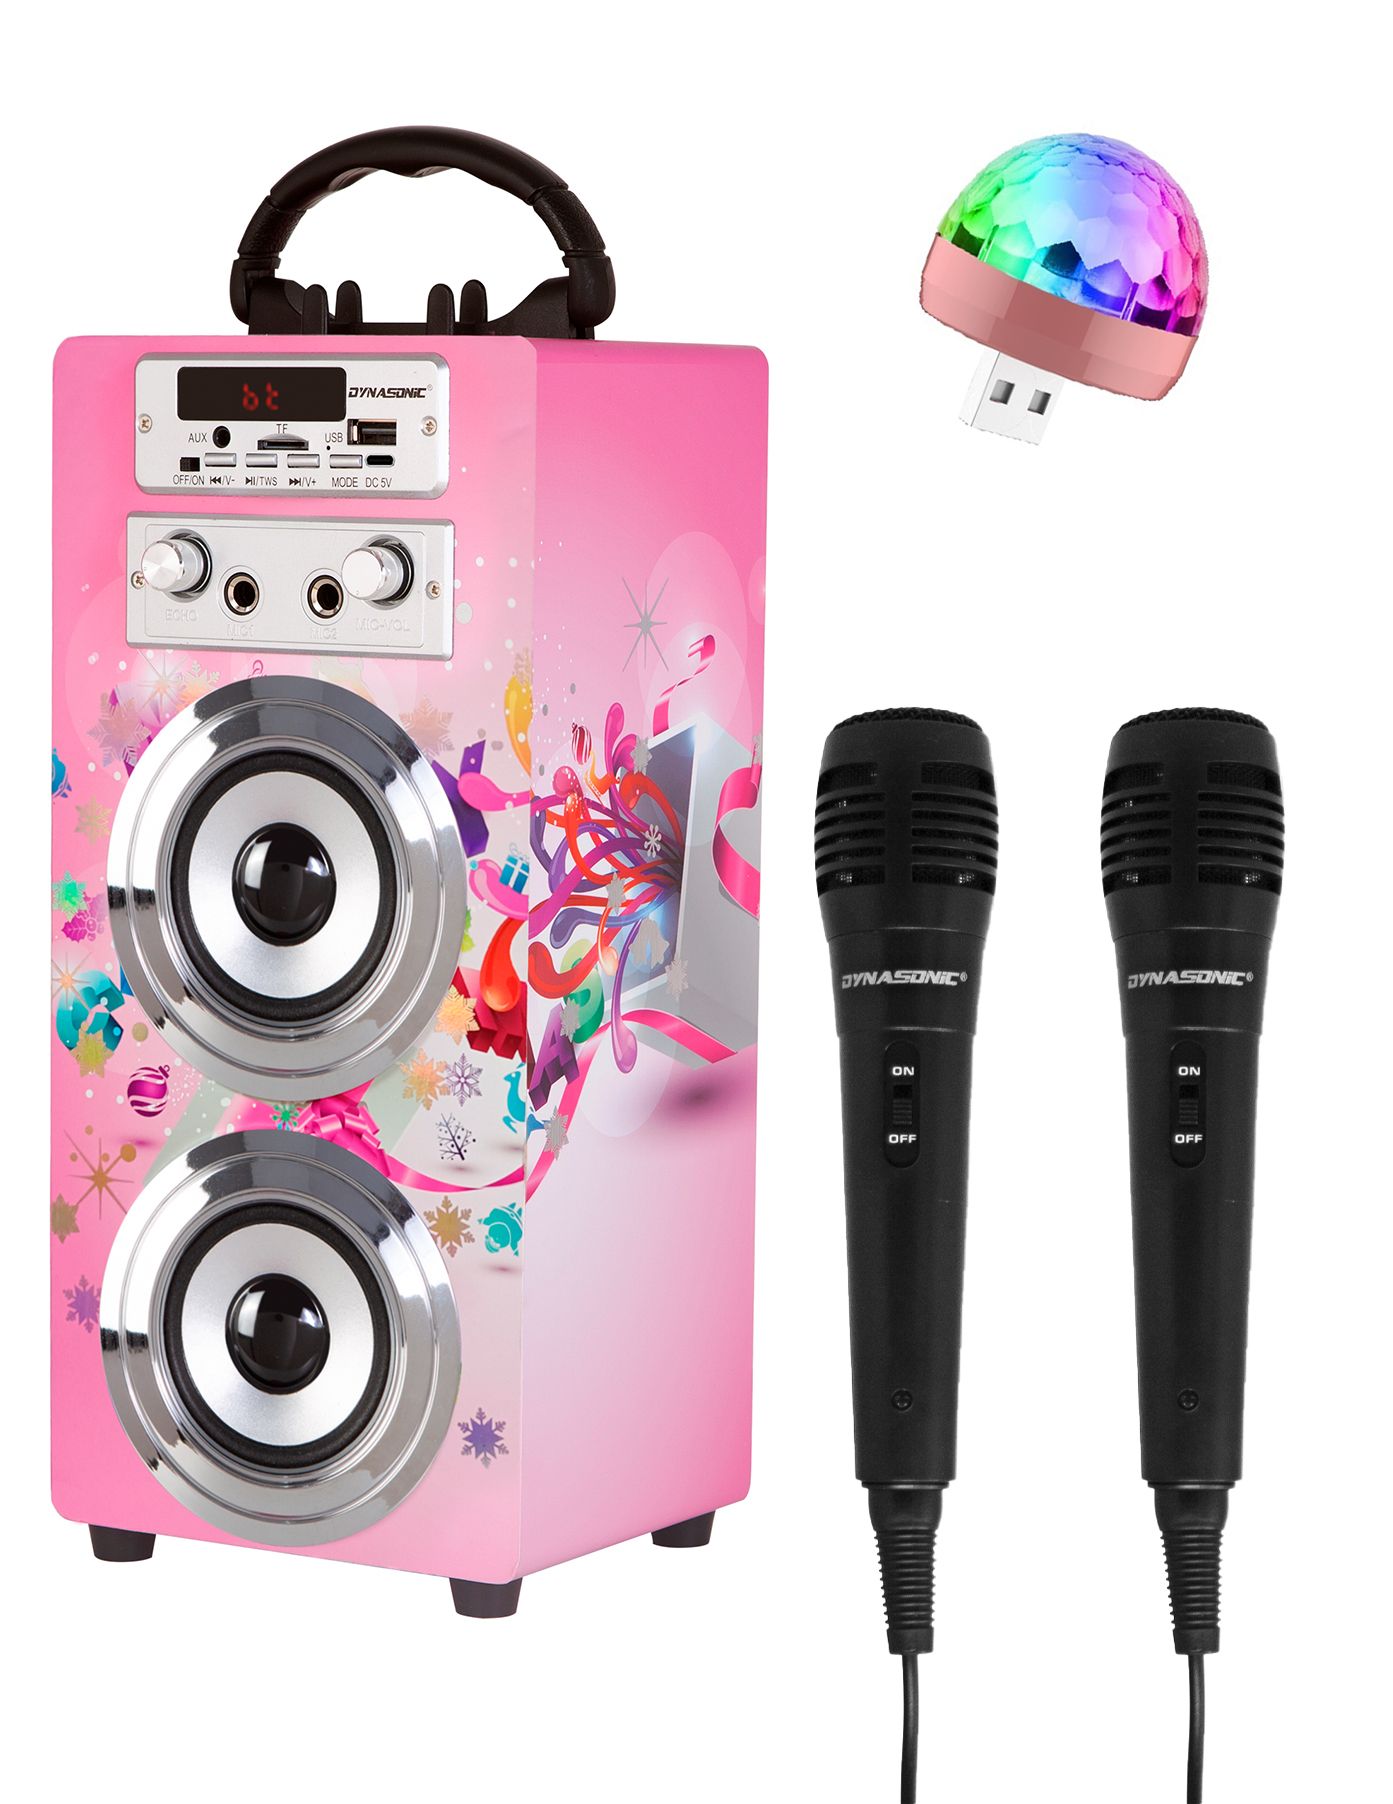 Verkstar - Micrófono inalámbrico para karaoke, altavoz de karaoke Bluetooth  micrófono de juguete para niños y adultos cumpleaños con luces LED y